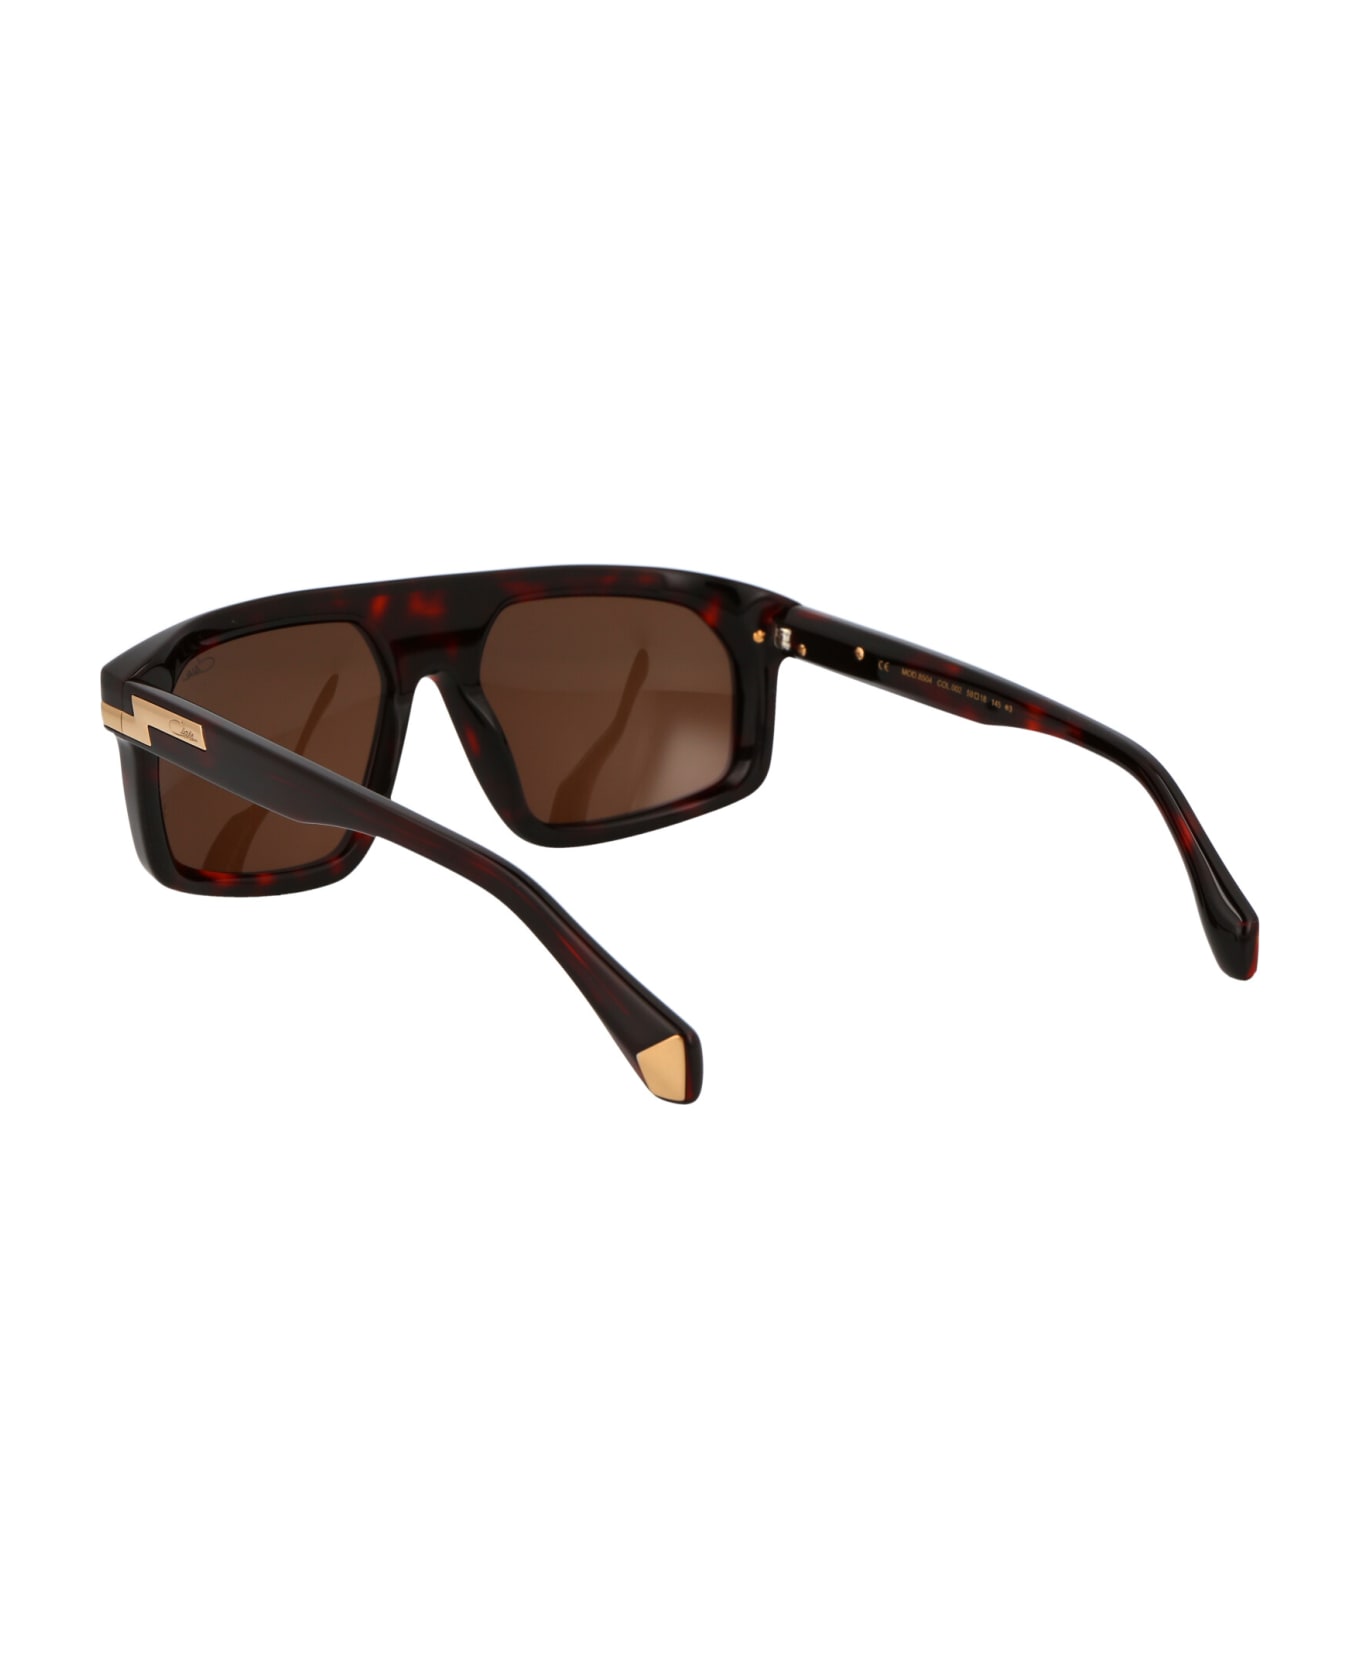 Cazal Mod. 8504 Sunglasses - 002 HAVANA サングラス